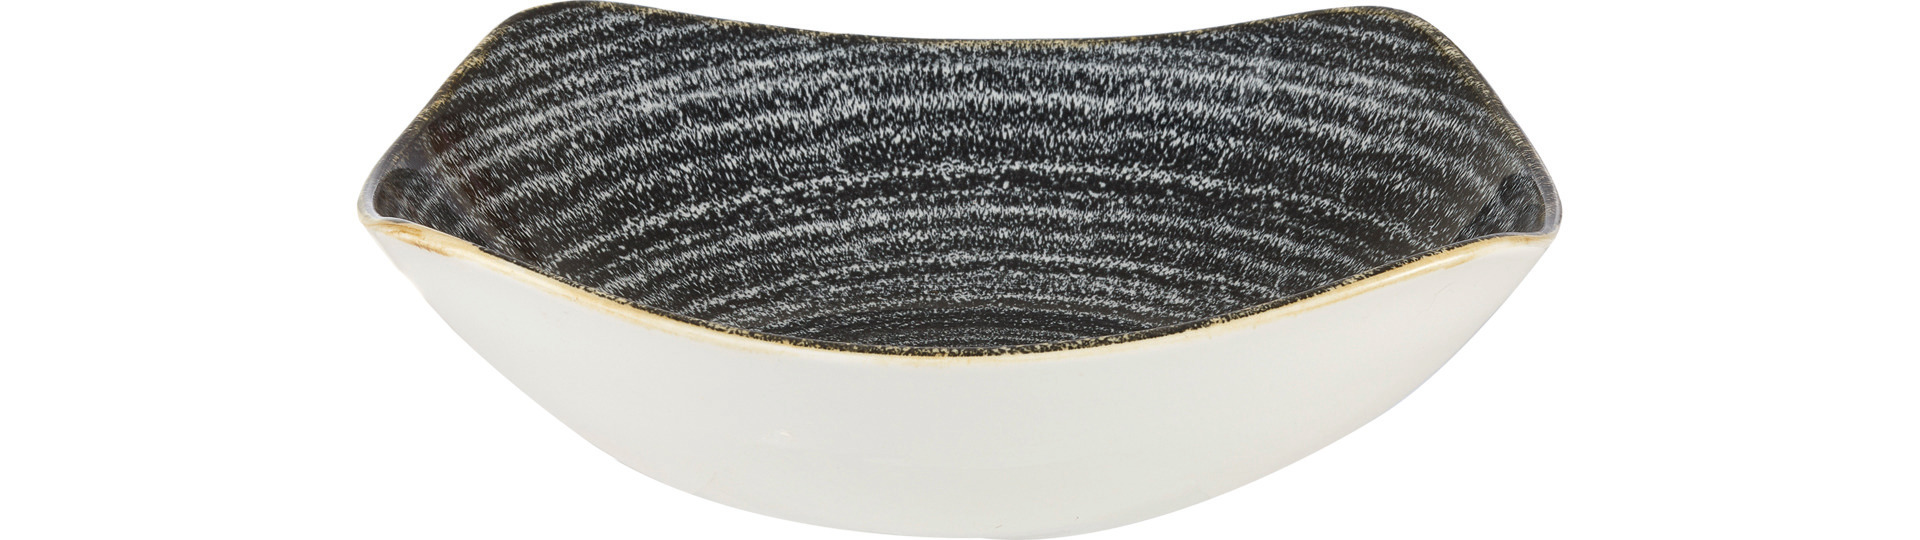 Bowl quadratisch 235 mm / 1,28 l Charcoal black